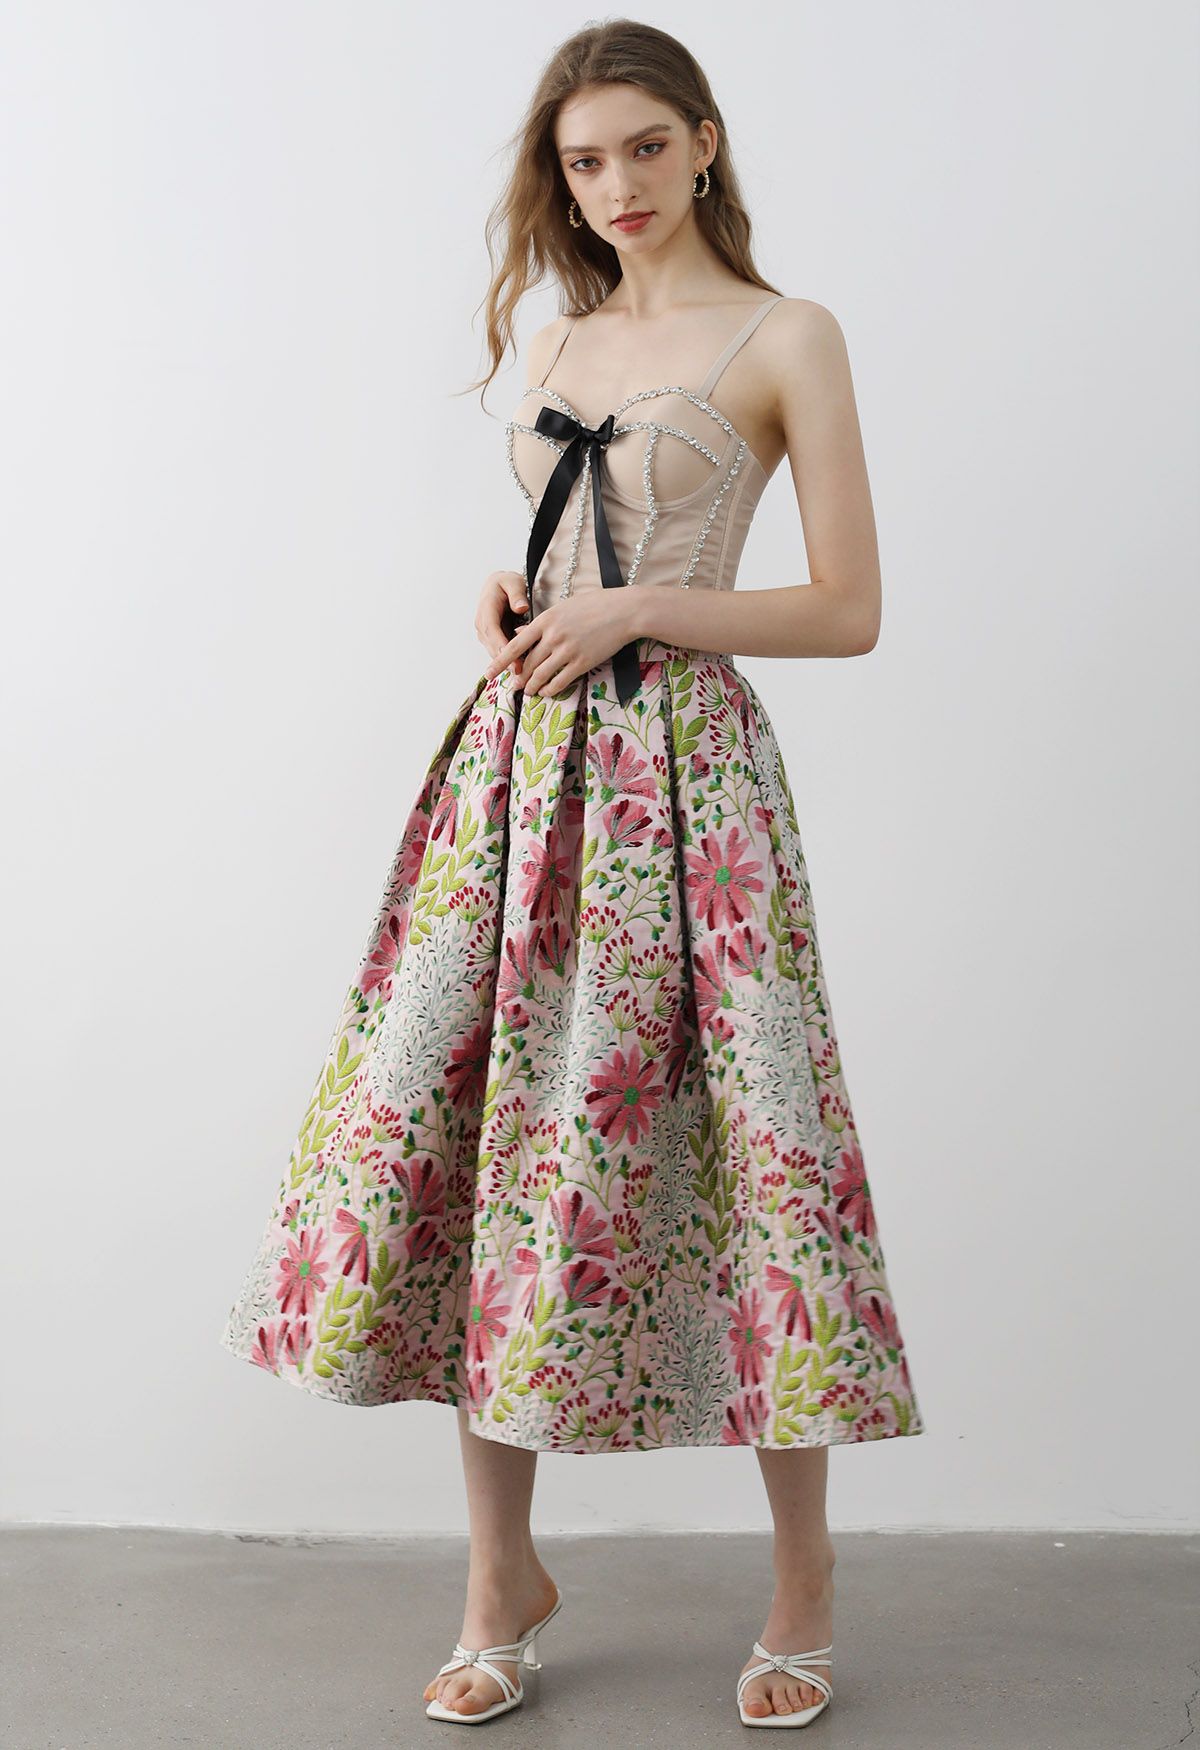 Falda midi plisada de jacquard con diseño de margaritas alegres